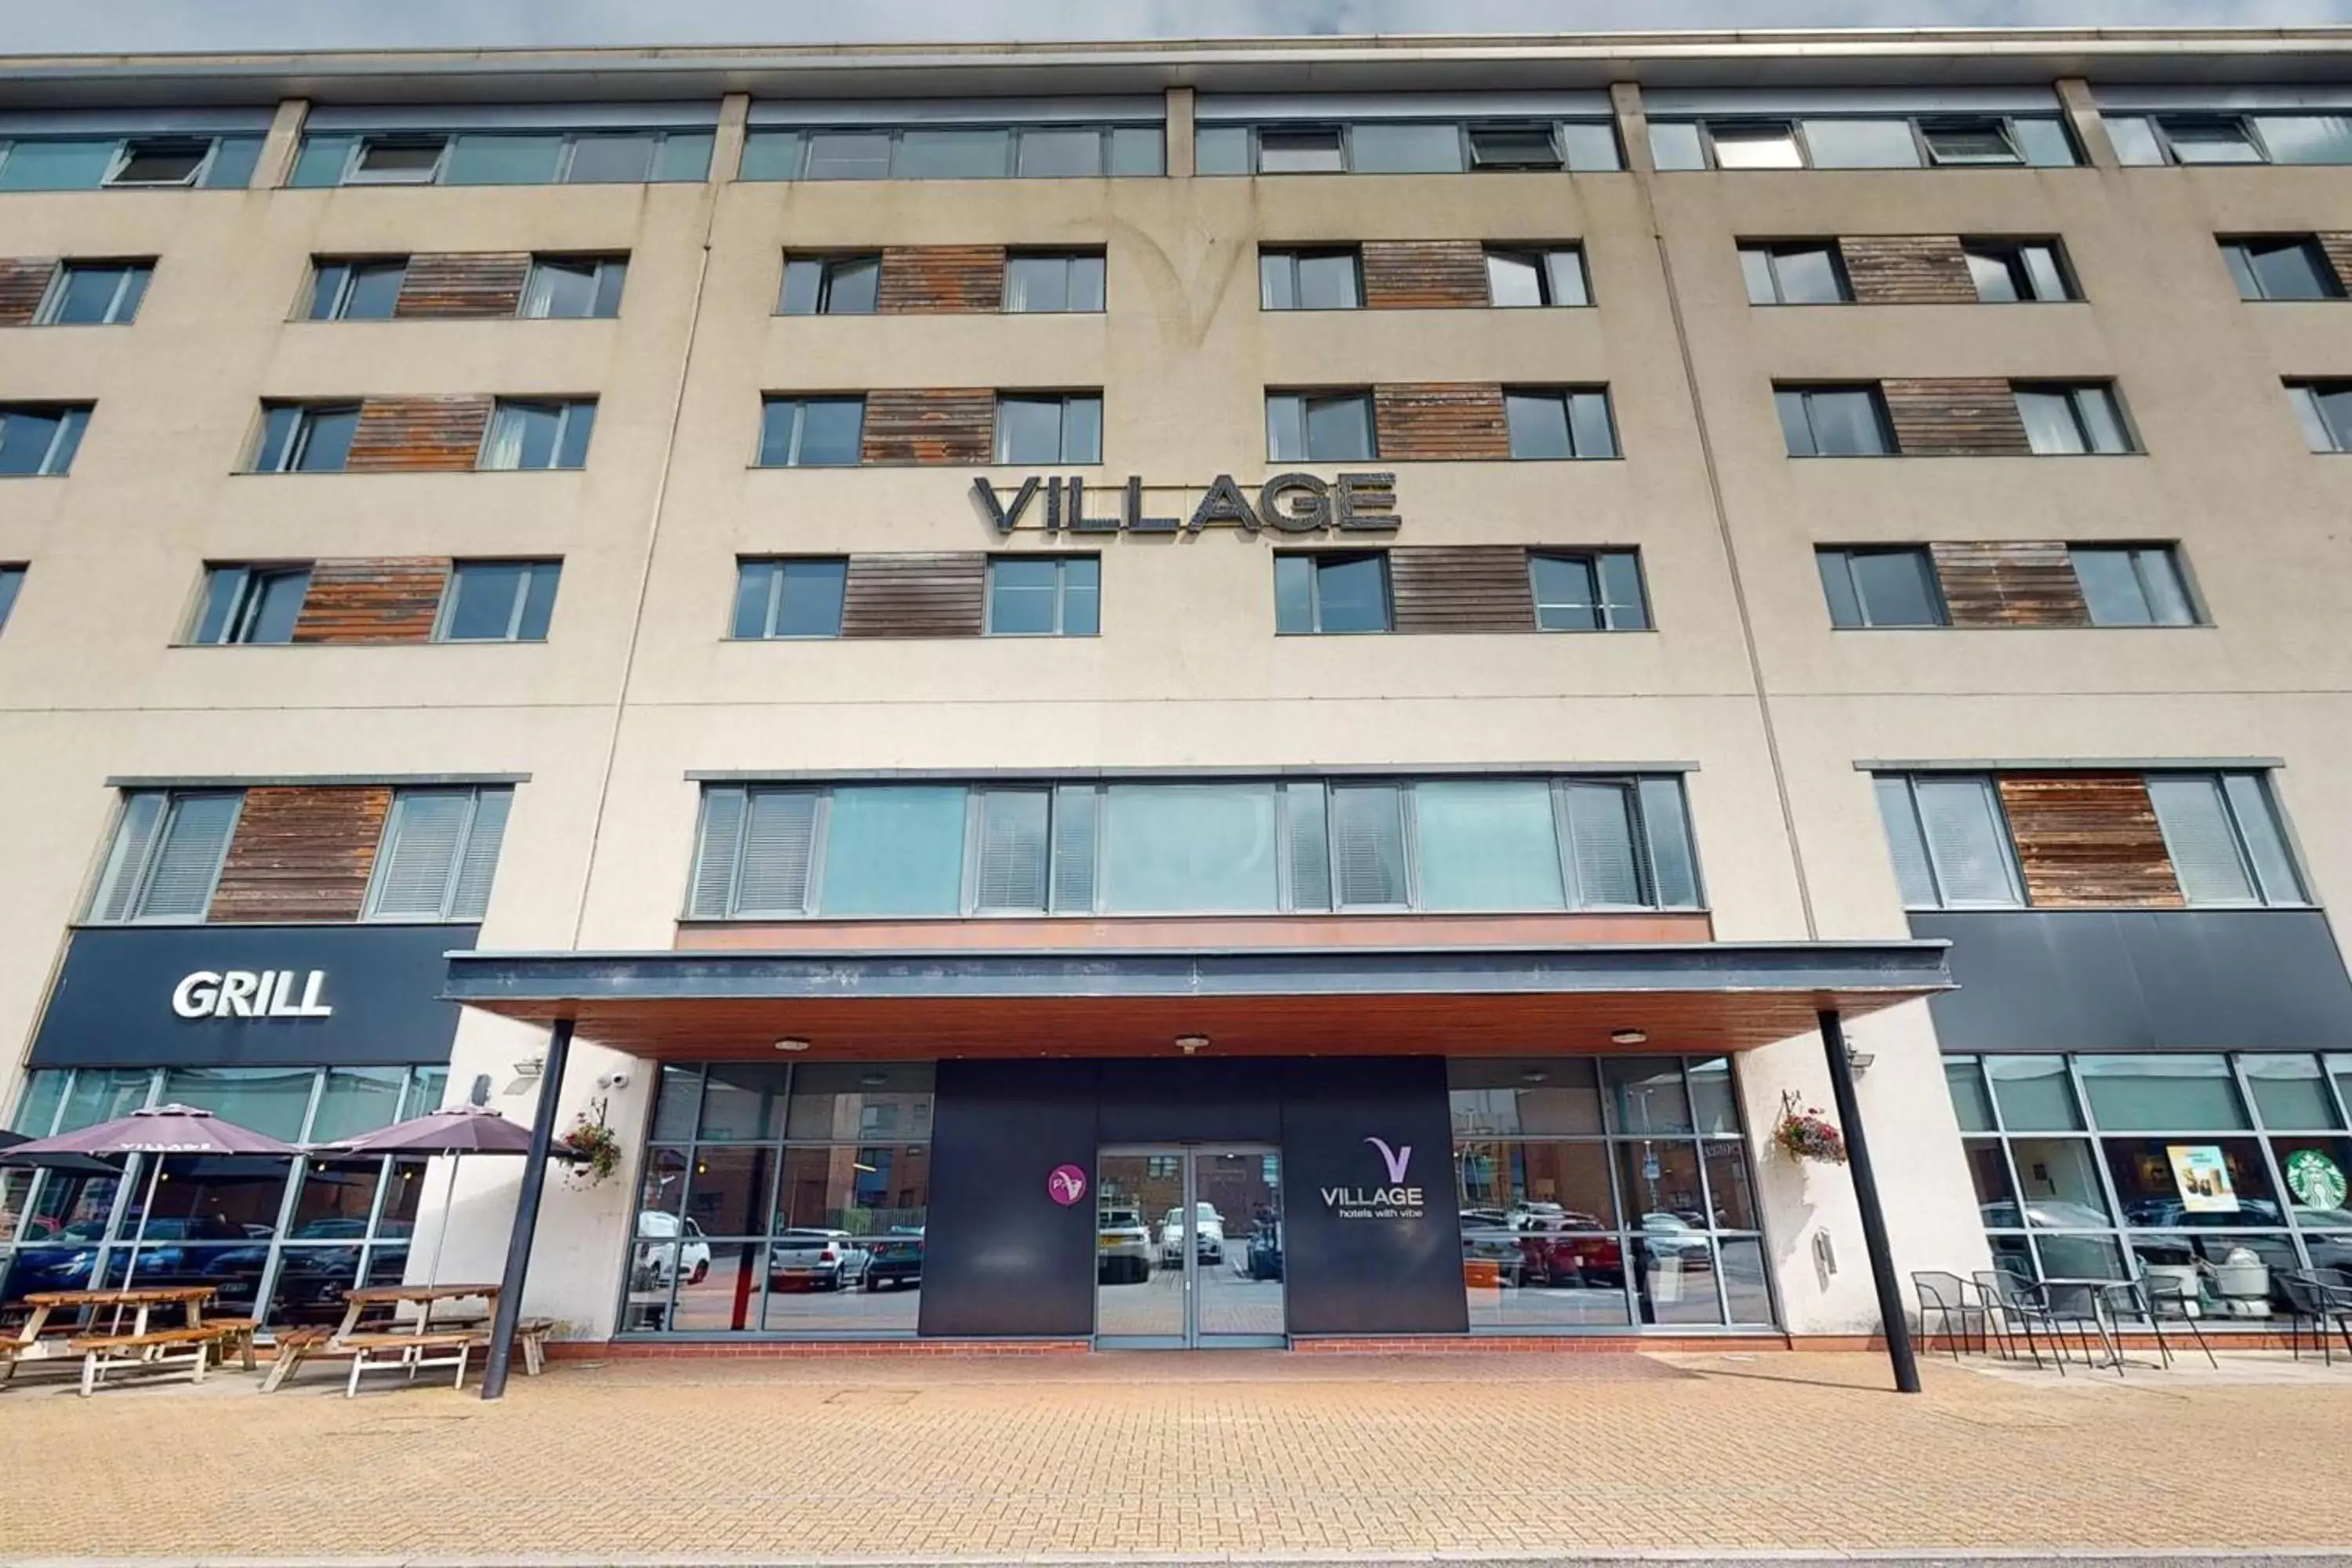 Facade/entrance, Property Building in Village Hotel Swansea